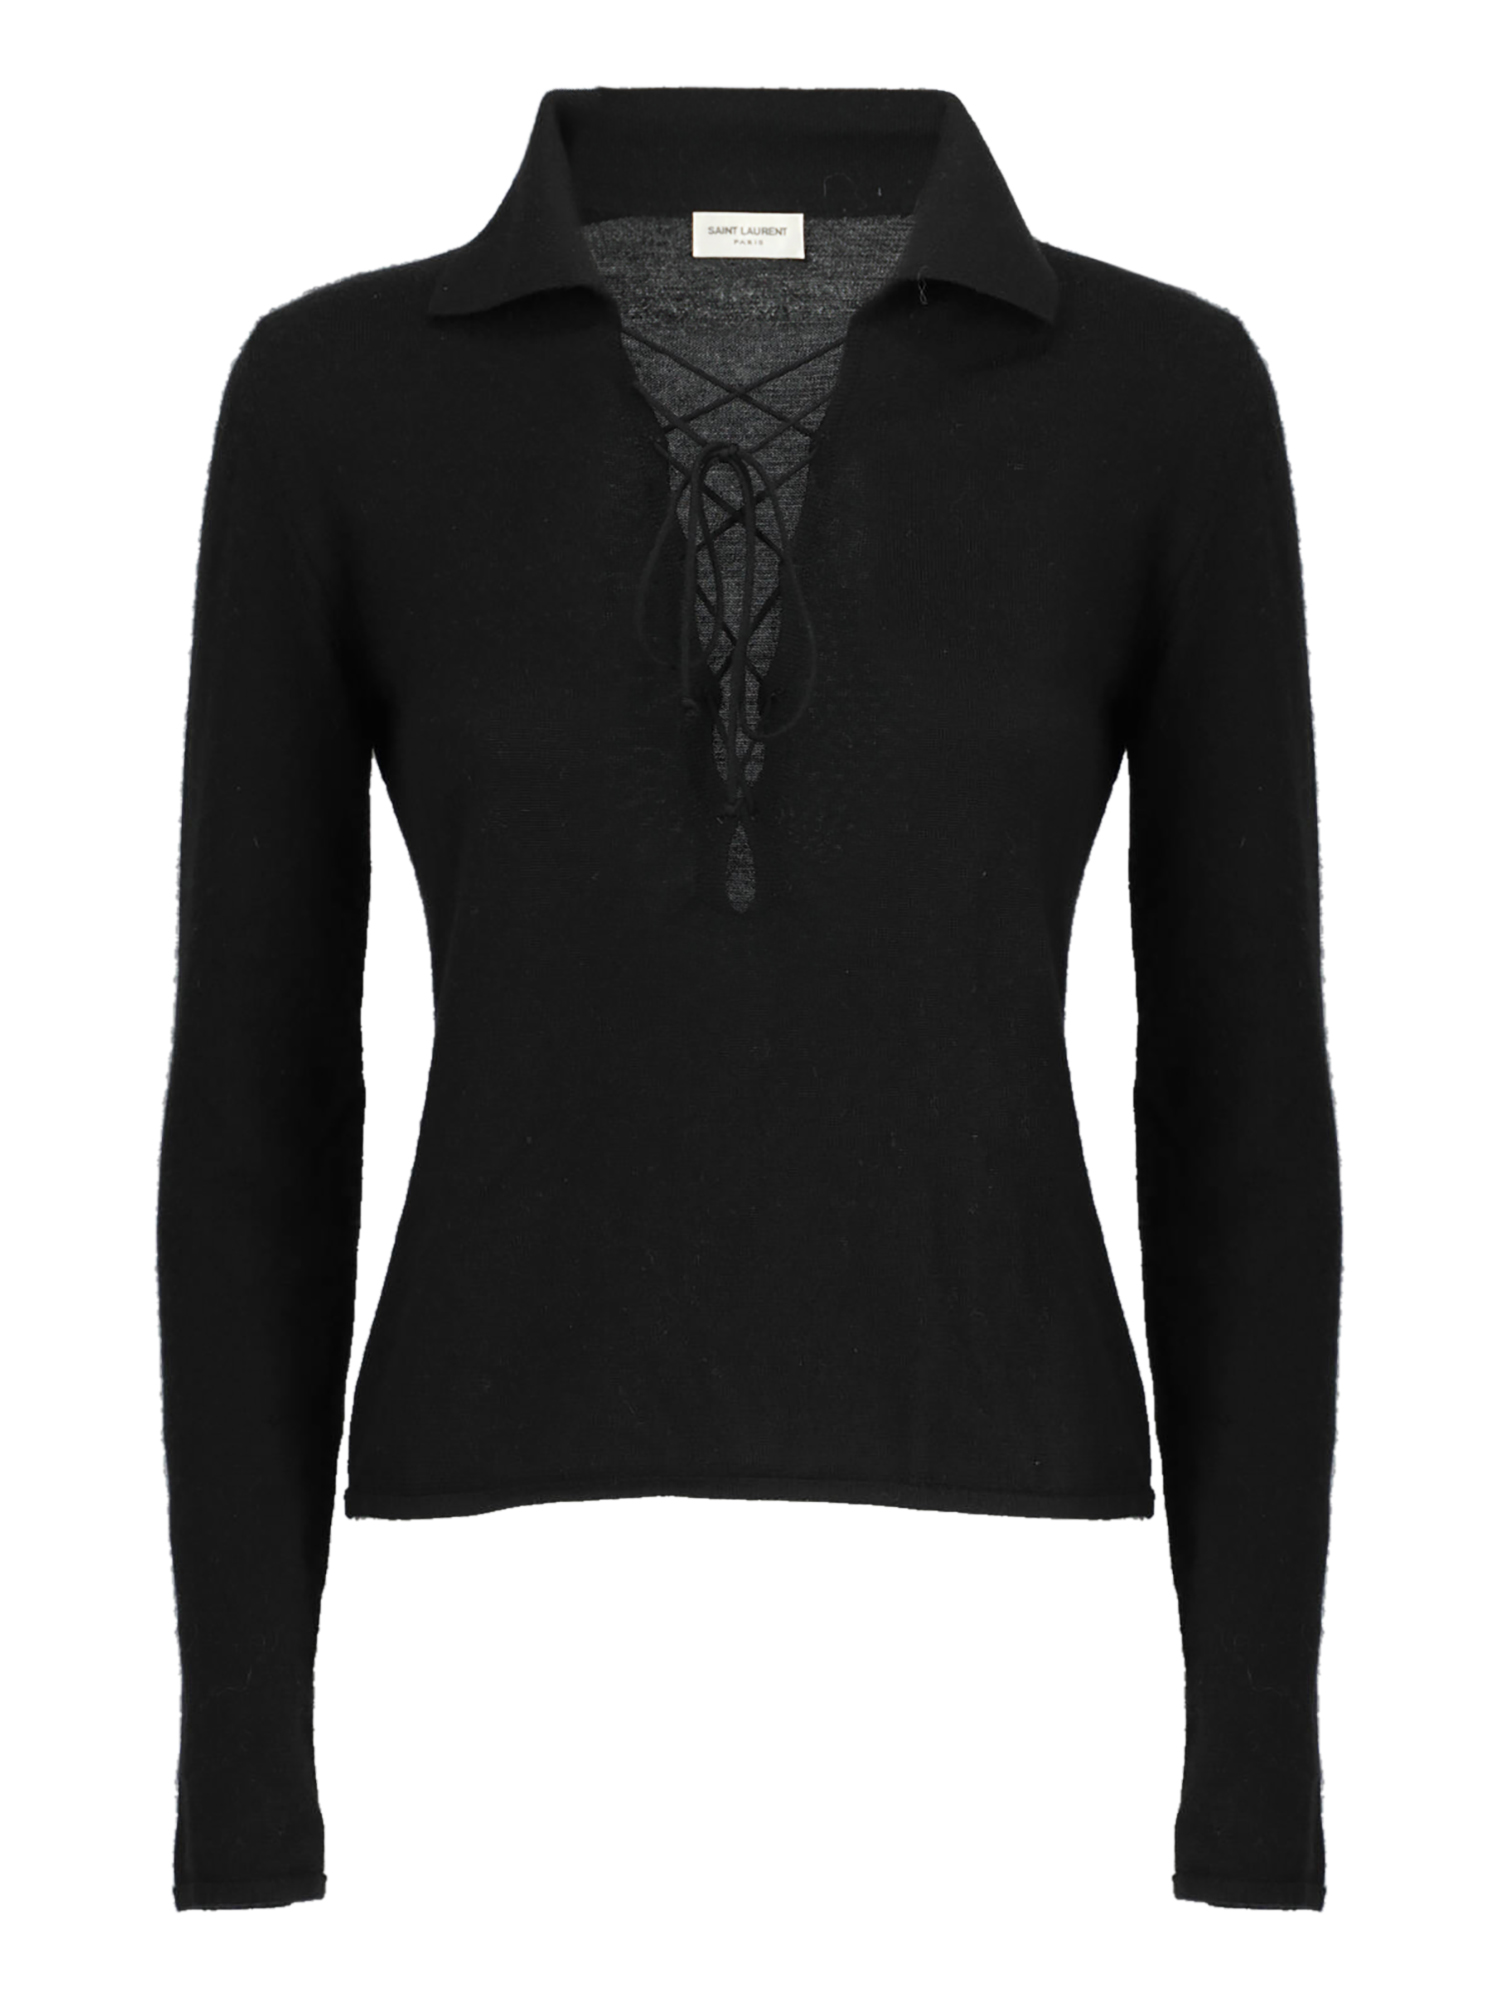 T-shirts Et Tops Pour Femme - Saint Laurent - En Wool Black - Taille:  -